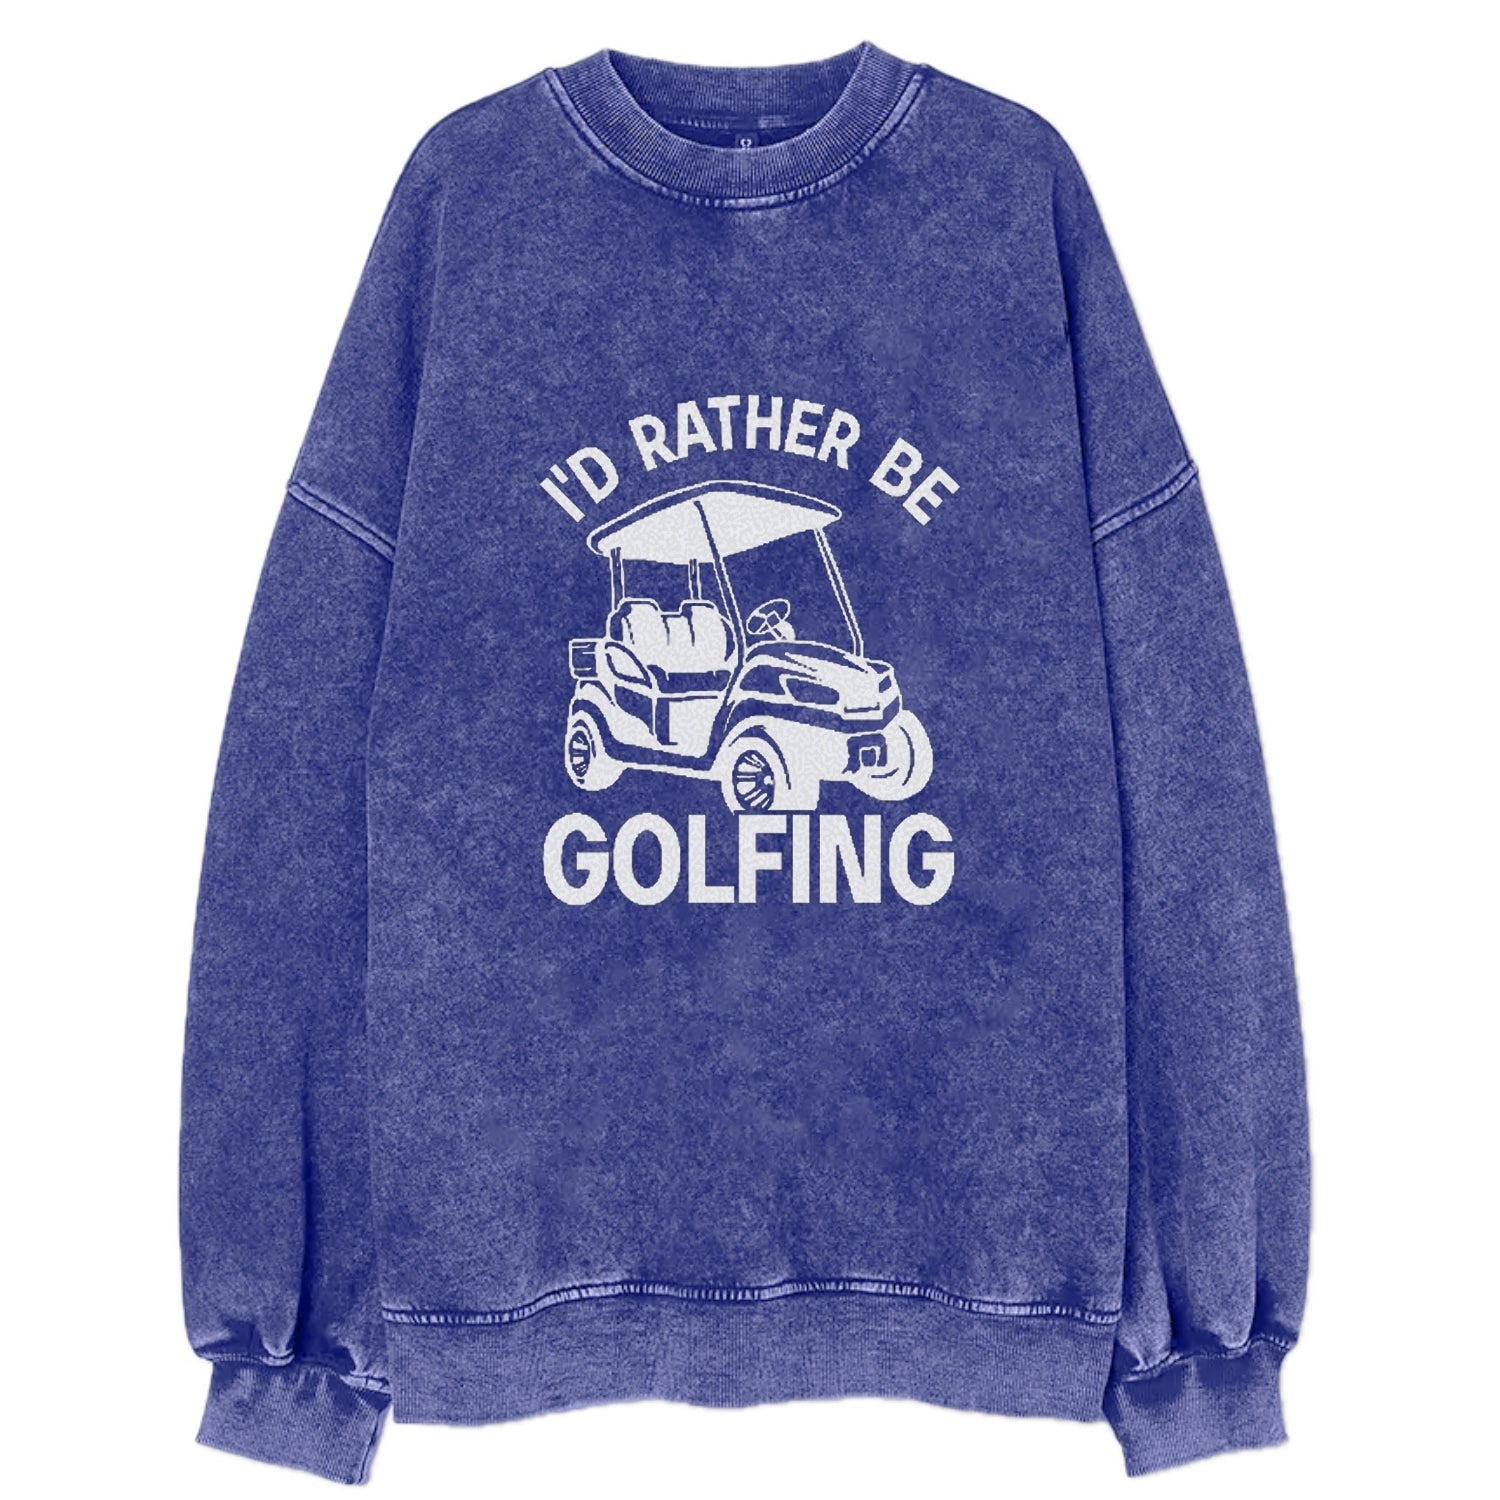 I'd Rather Be Golfing Vintage Sweatshirt